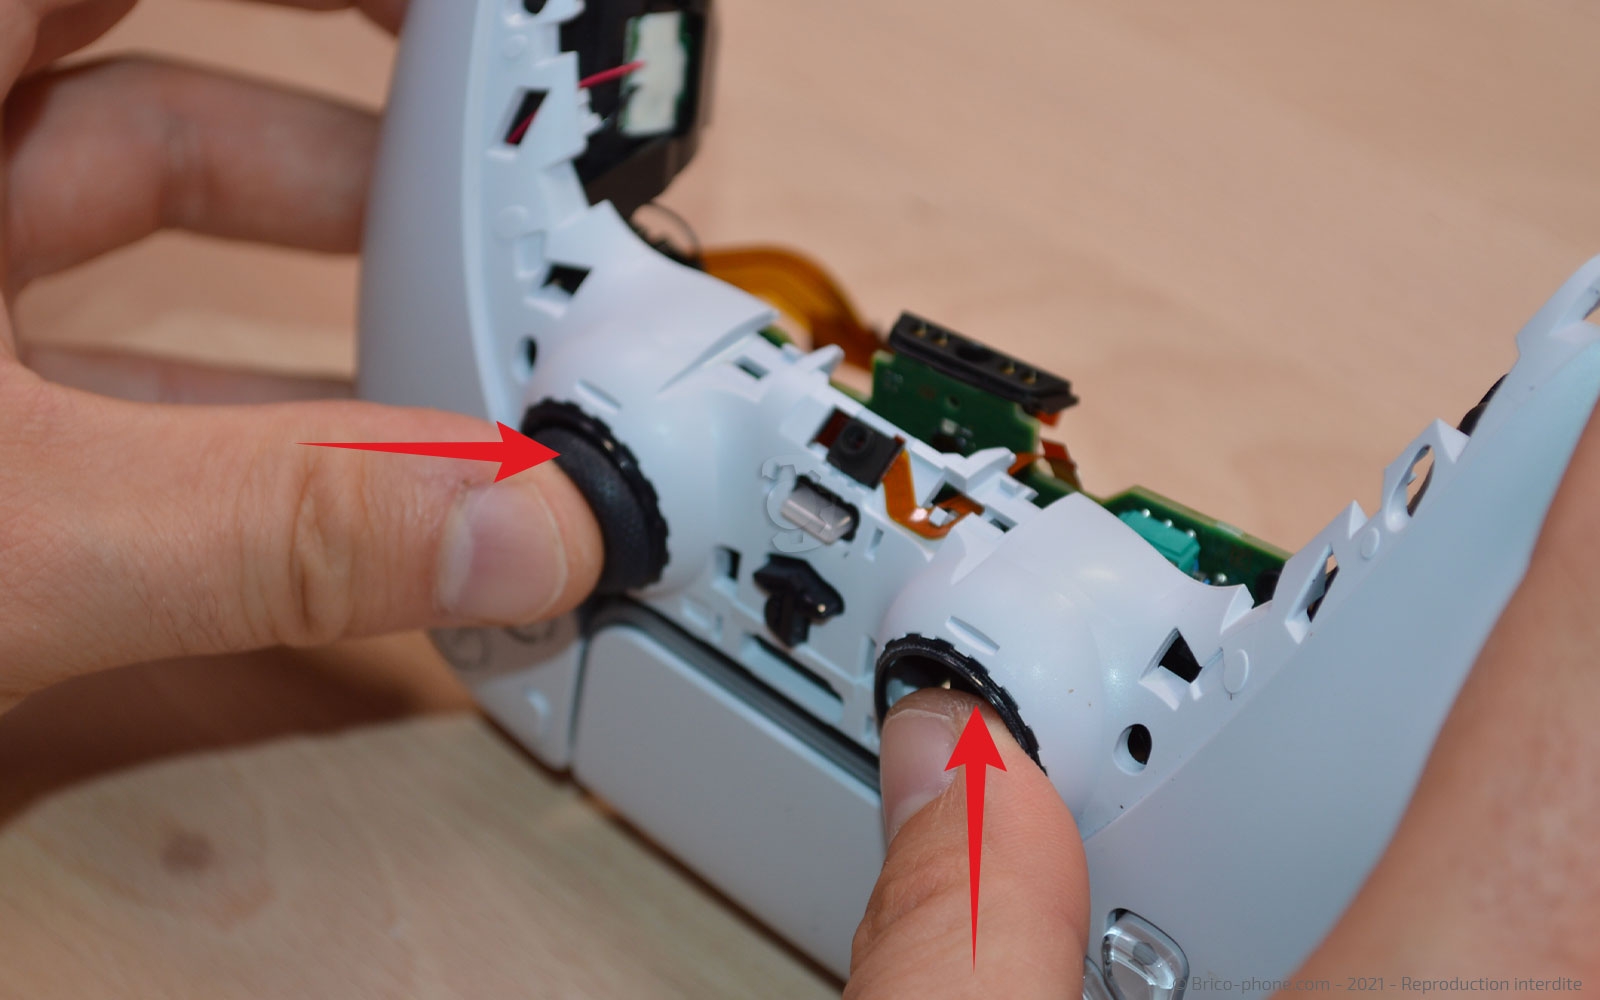 Tuto PS5 : comment désactiver le micro de la manette DualSense ? 